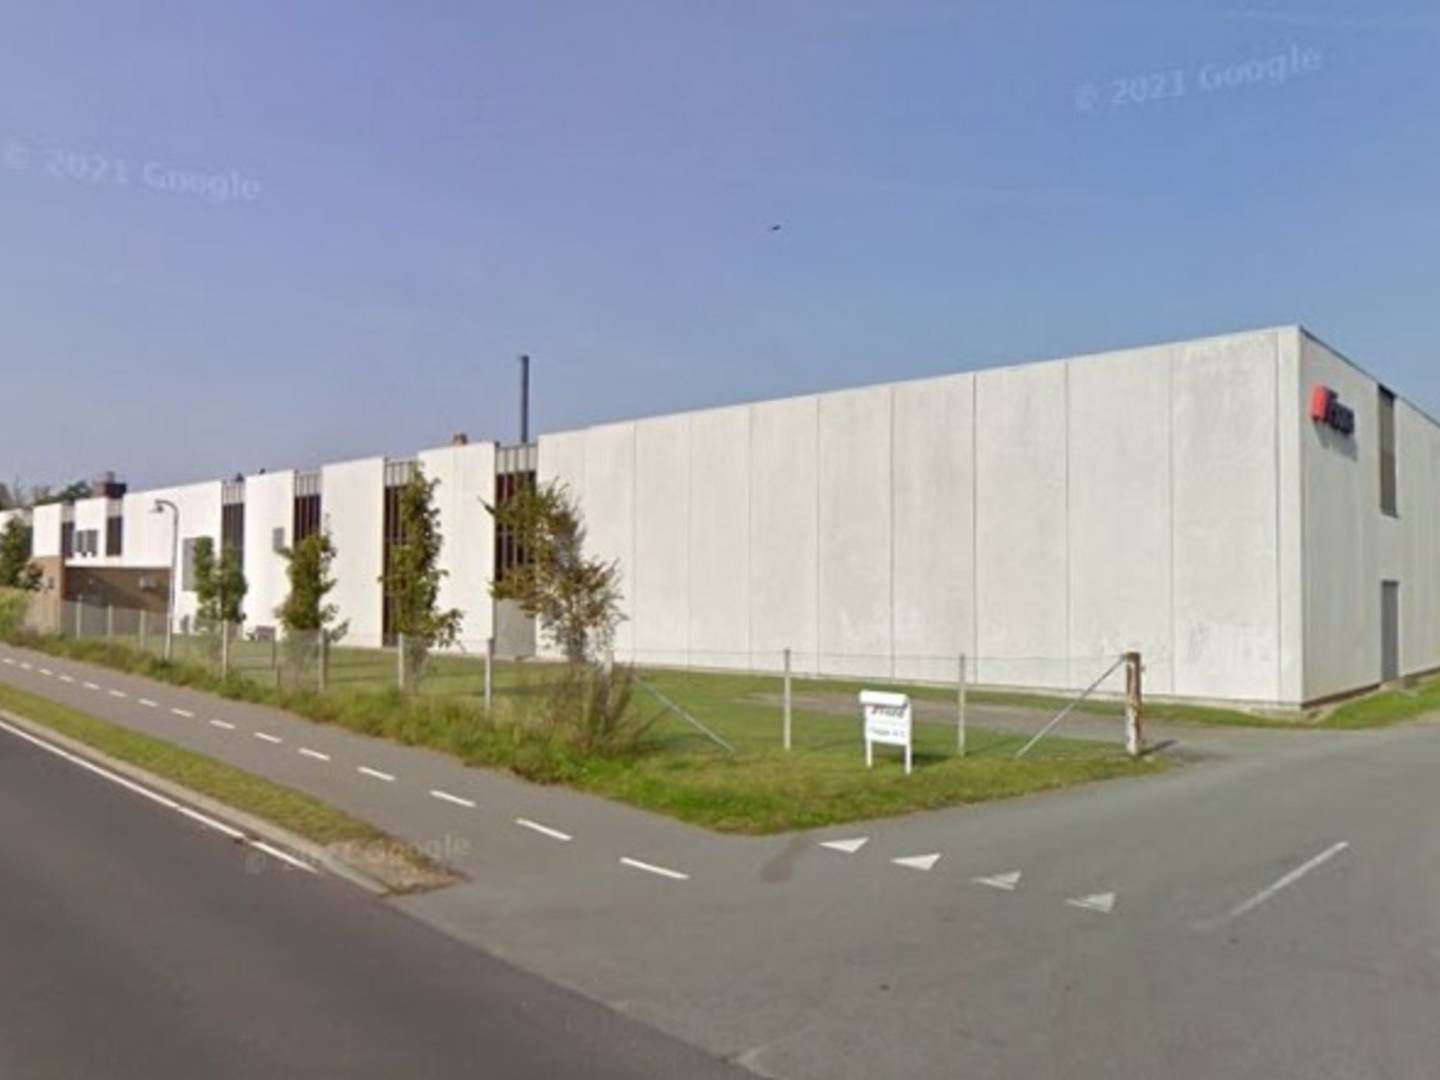 K3 Ejendomme købte den tidligere tapetfabrik i 2019 for 5,5 mio. kr. | Foto: Google